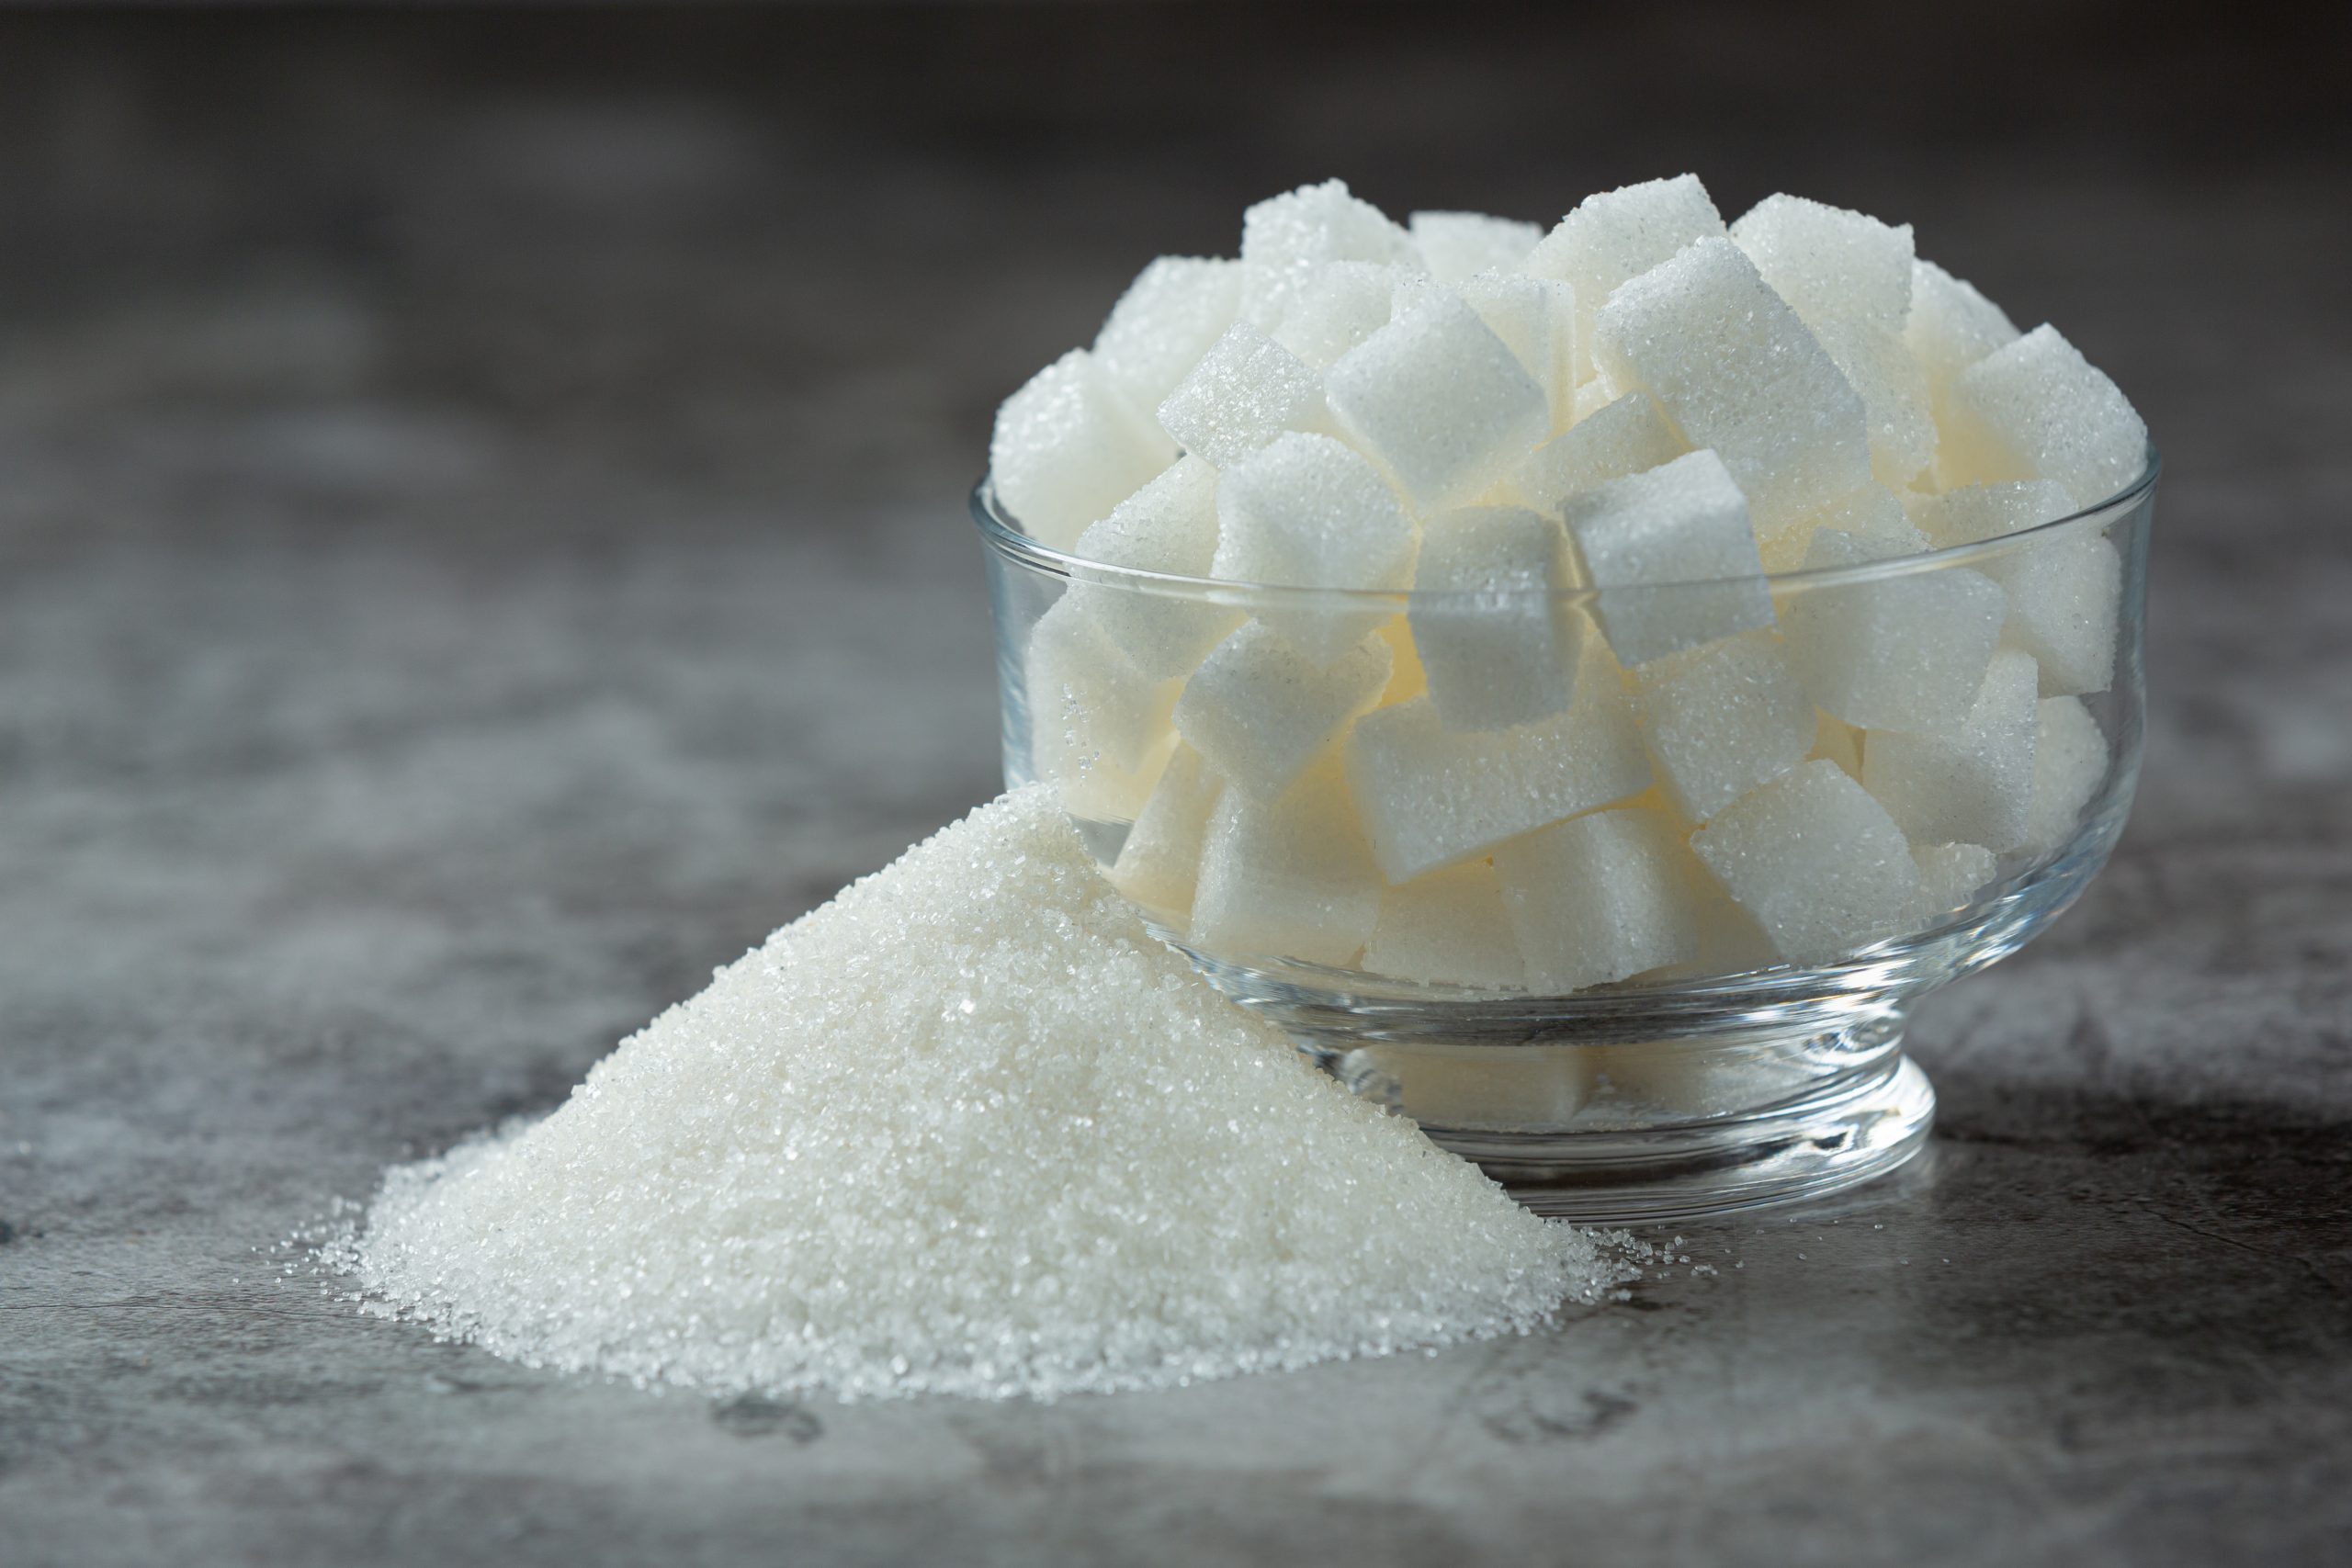 Substituição de açúcar por adoçante não é eficaz a longo prazo na busca pelo emagrecimento